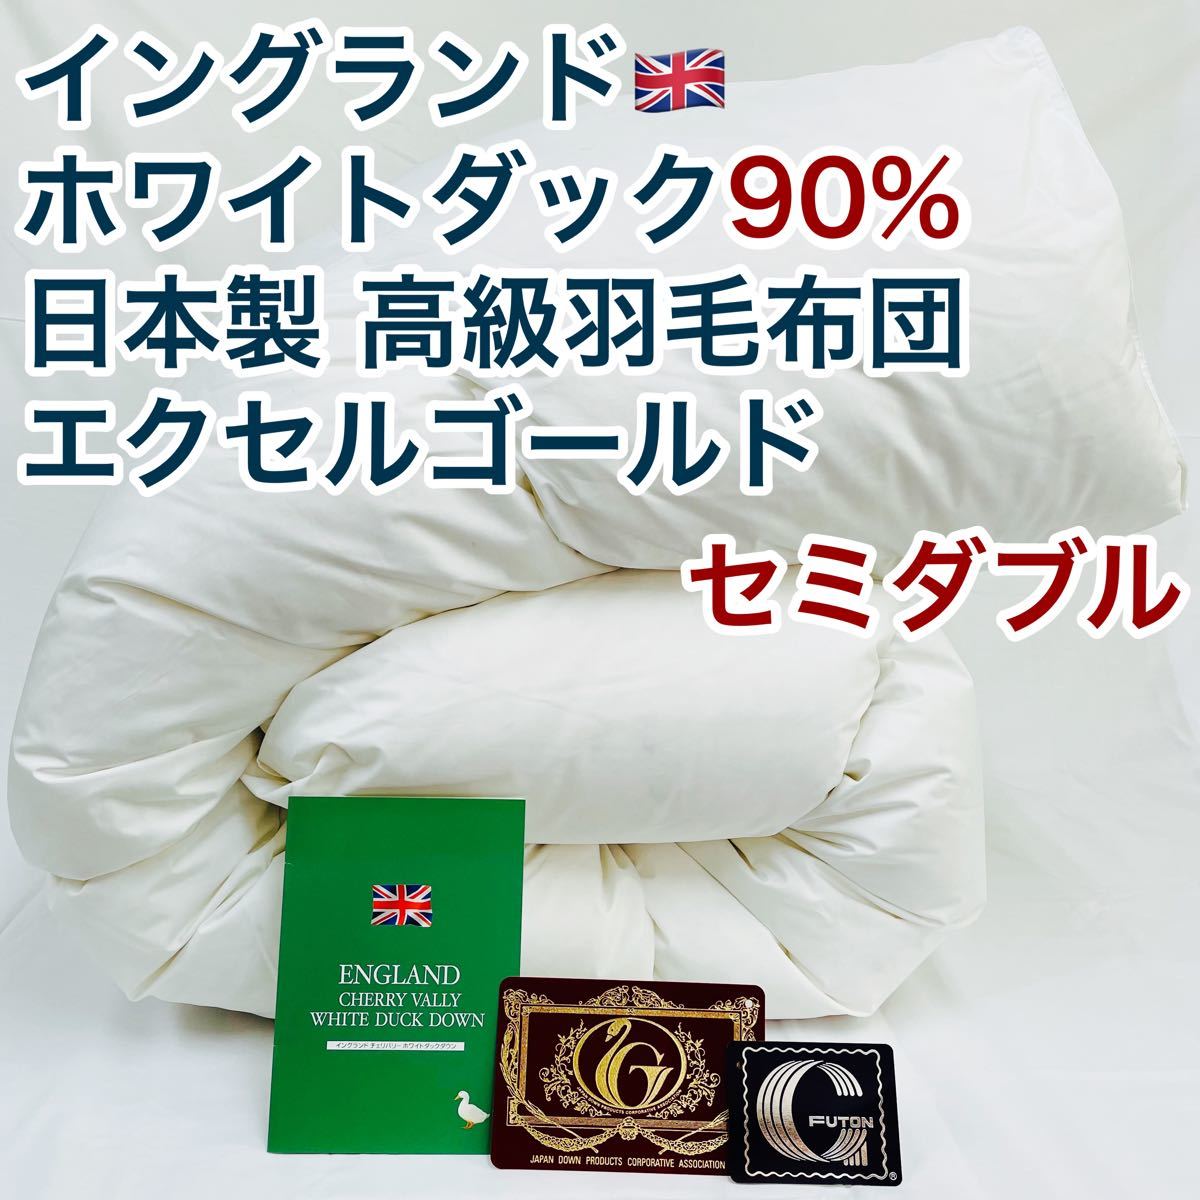 羽毛布団 セミダブル イングランド産ホワイトダック90% 日本製 